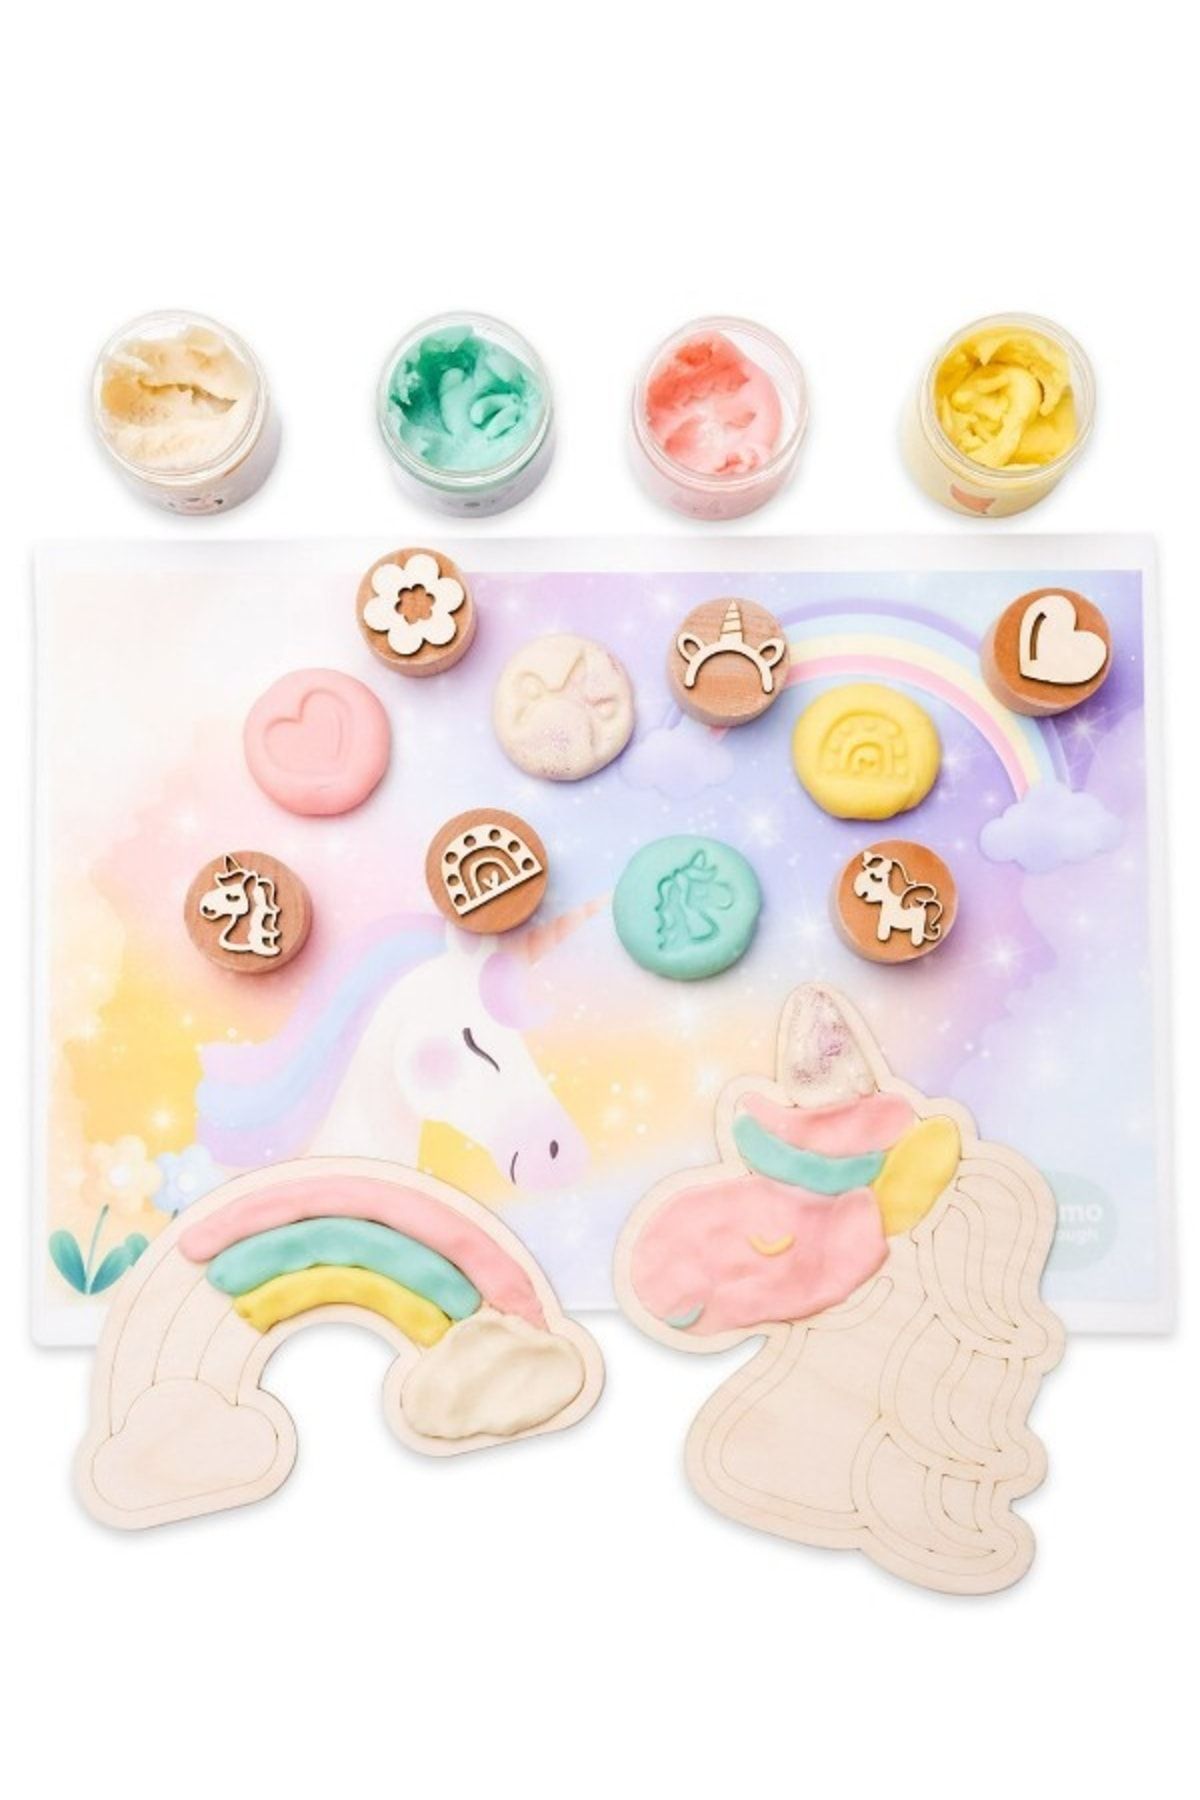 Bonimo Unicorn Temalı Oyun Hamuru Etkinlik Seti - Play Dough